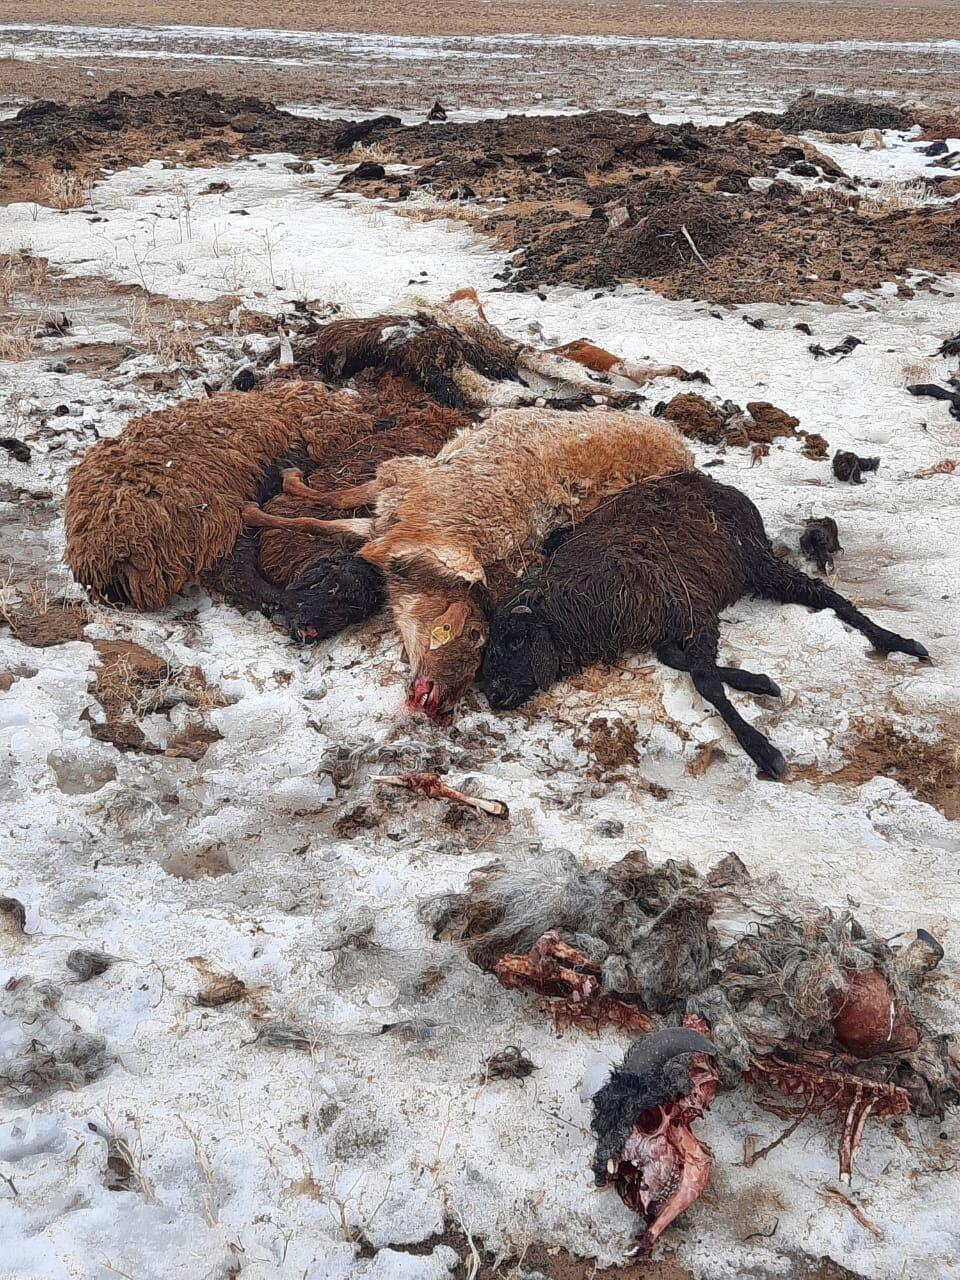 Падеж скота в Атырауской области: причина до сих пор неизвестна